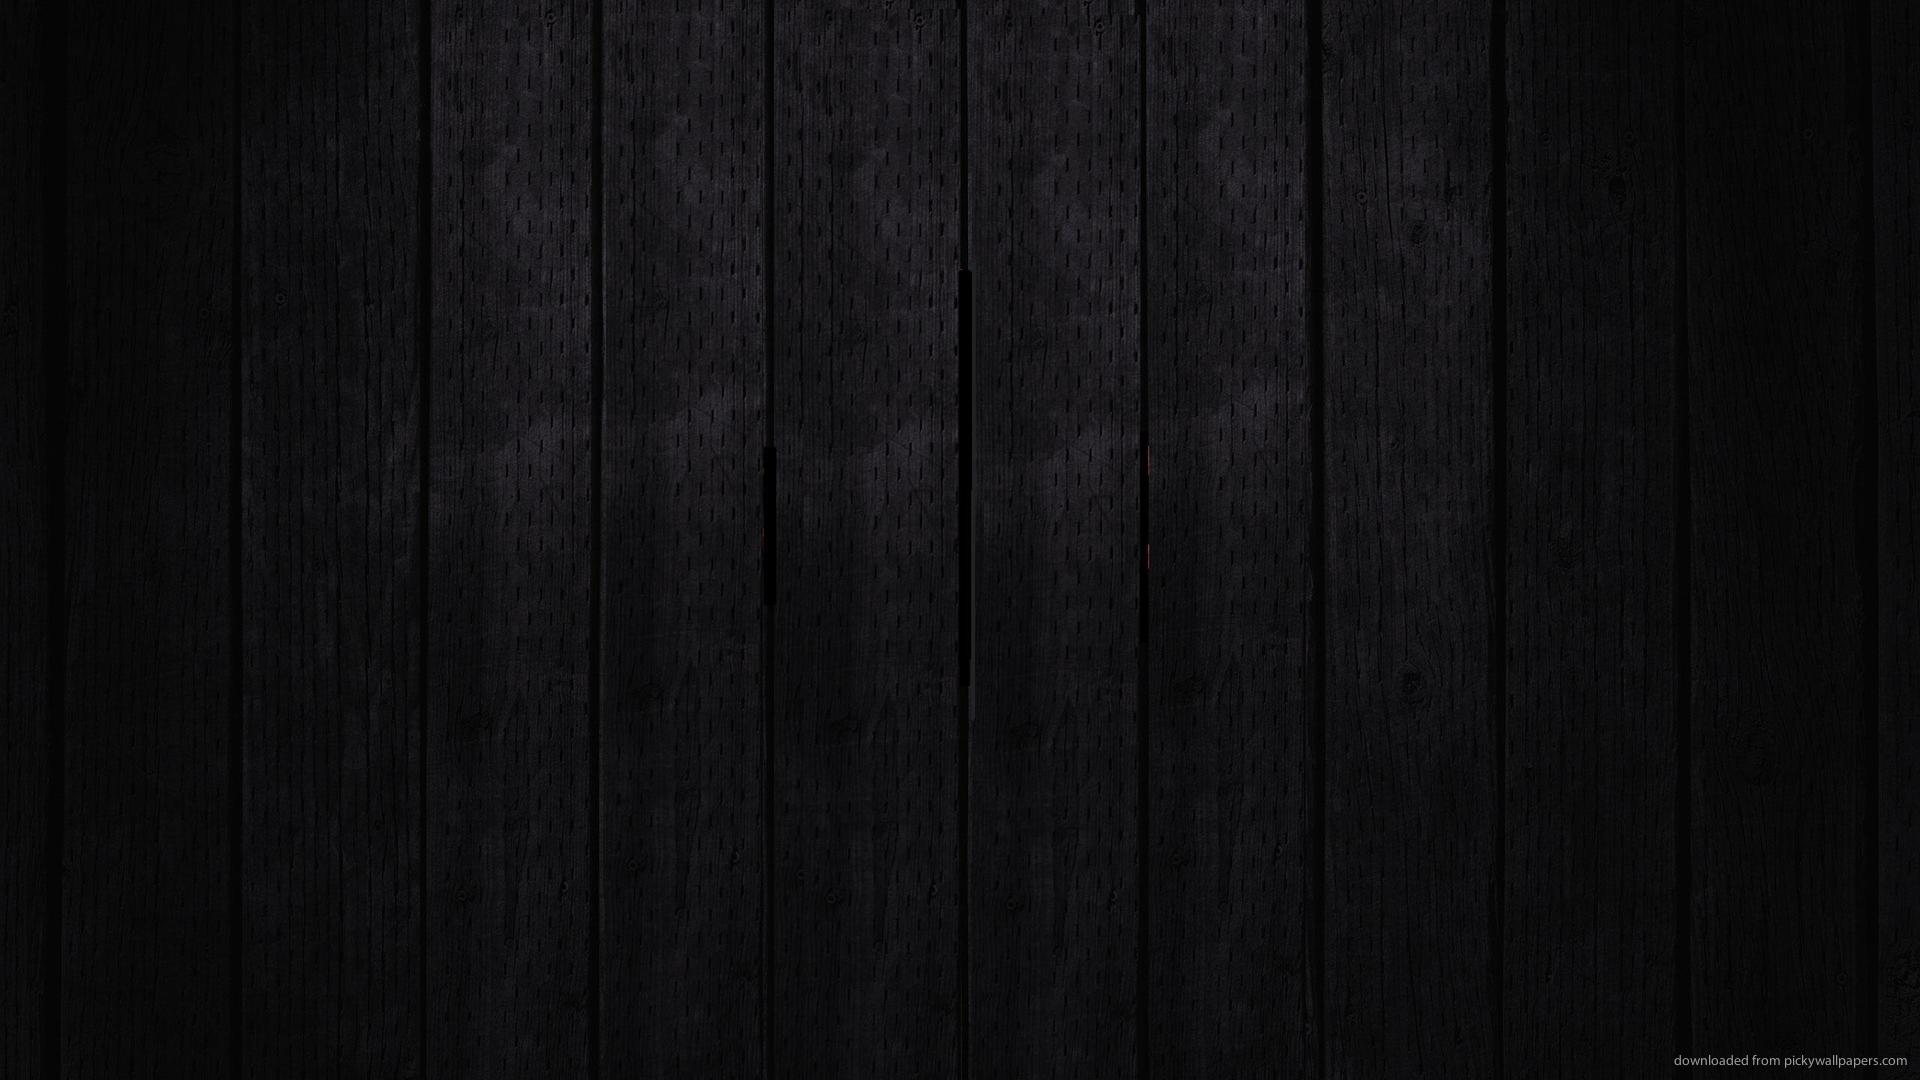  Black  Wood  Wallpaper  WallpaperSafari